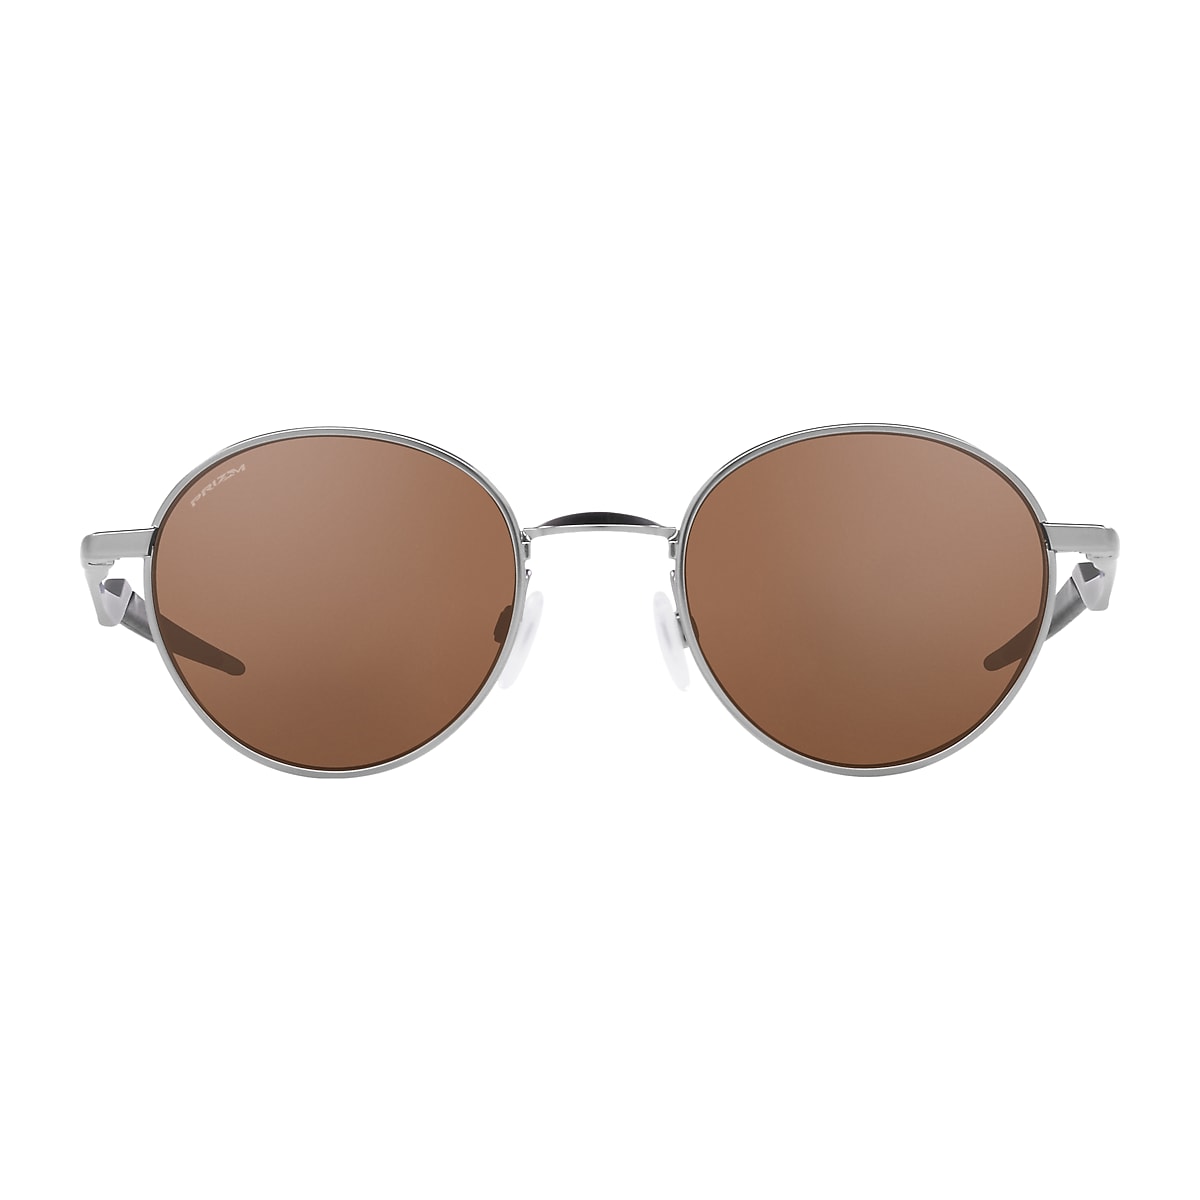 Terrigal Prizm Tungsten Lenses, Satin Chrome Frame Sunglasses 